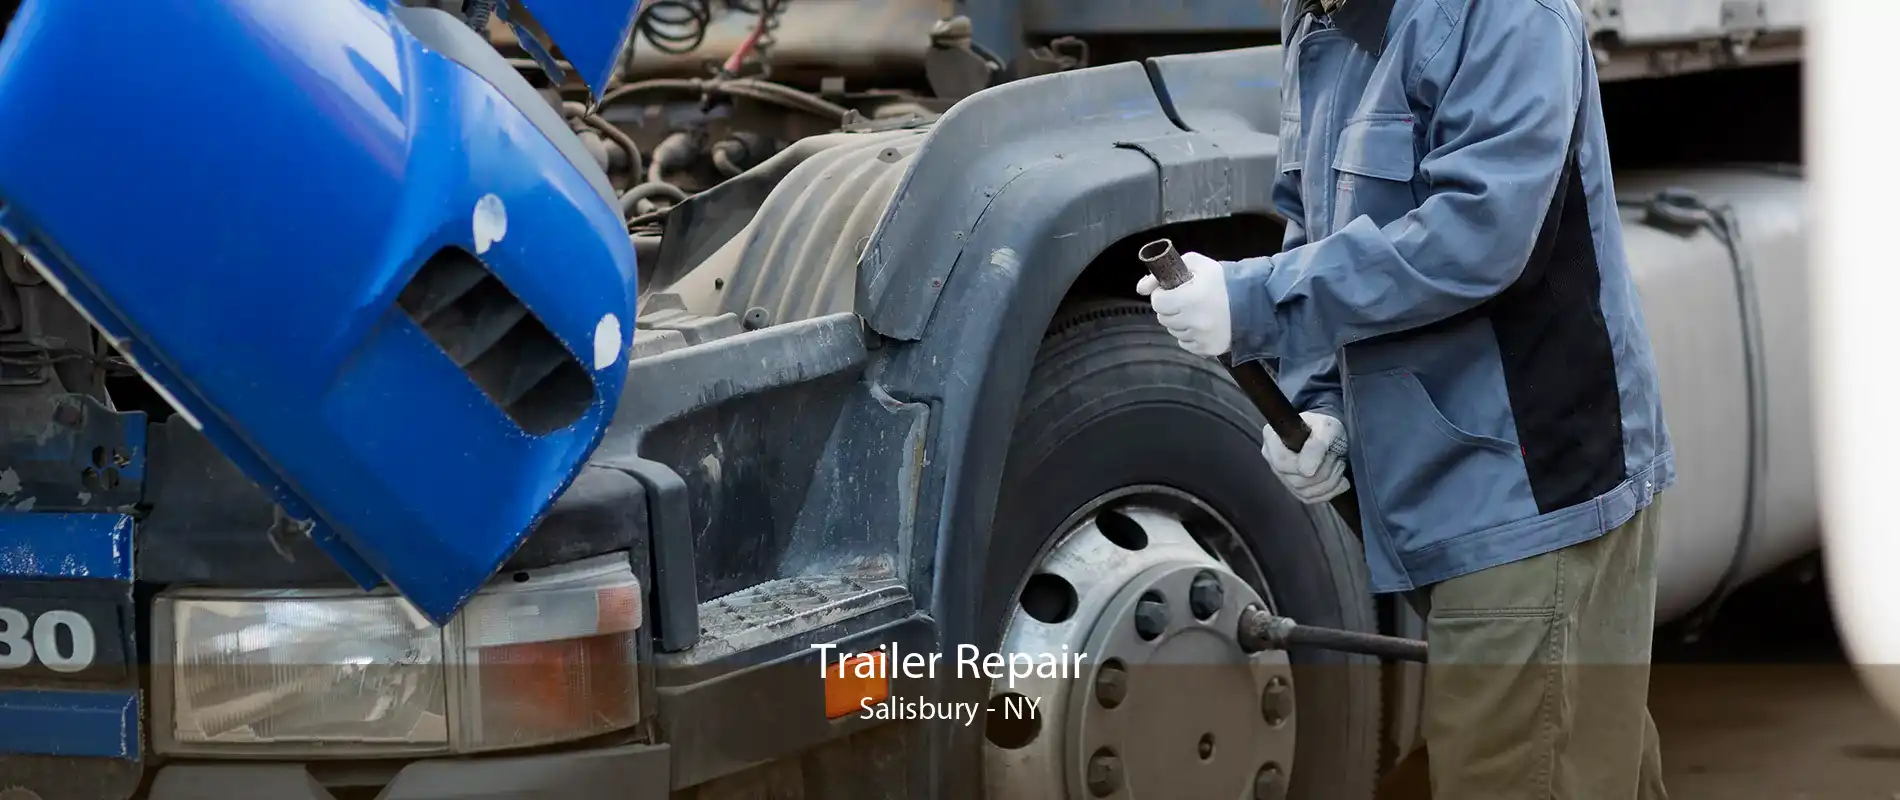 Trailer Repair Salisbury - NY